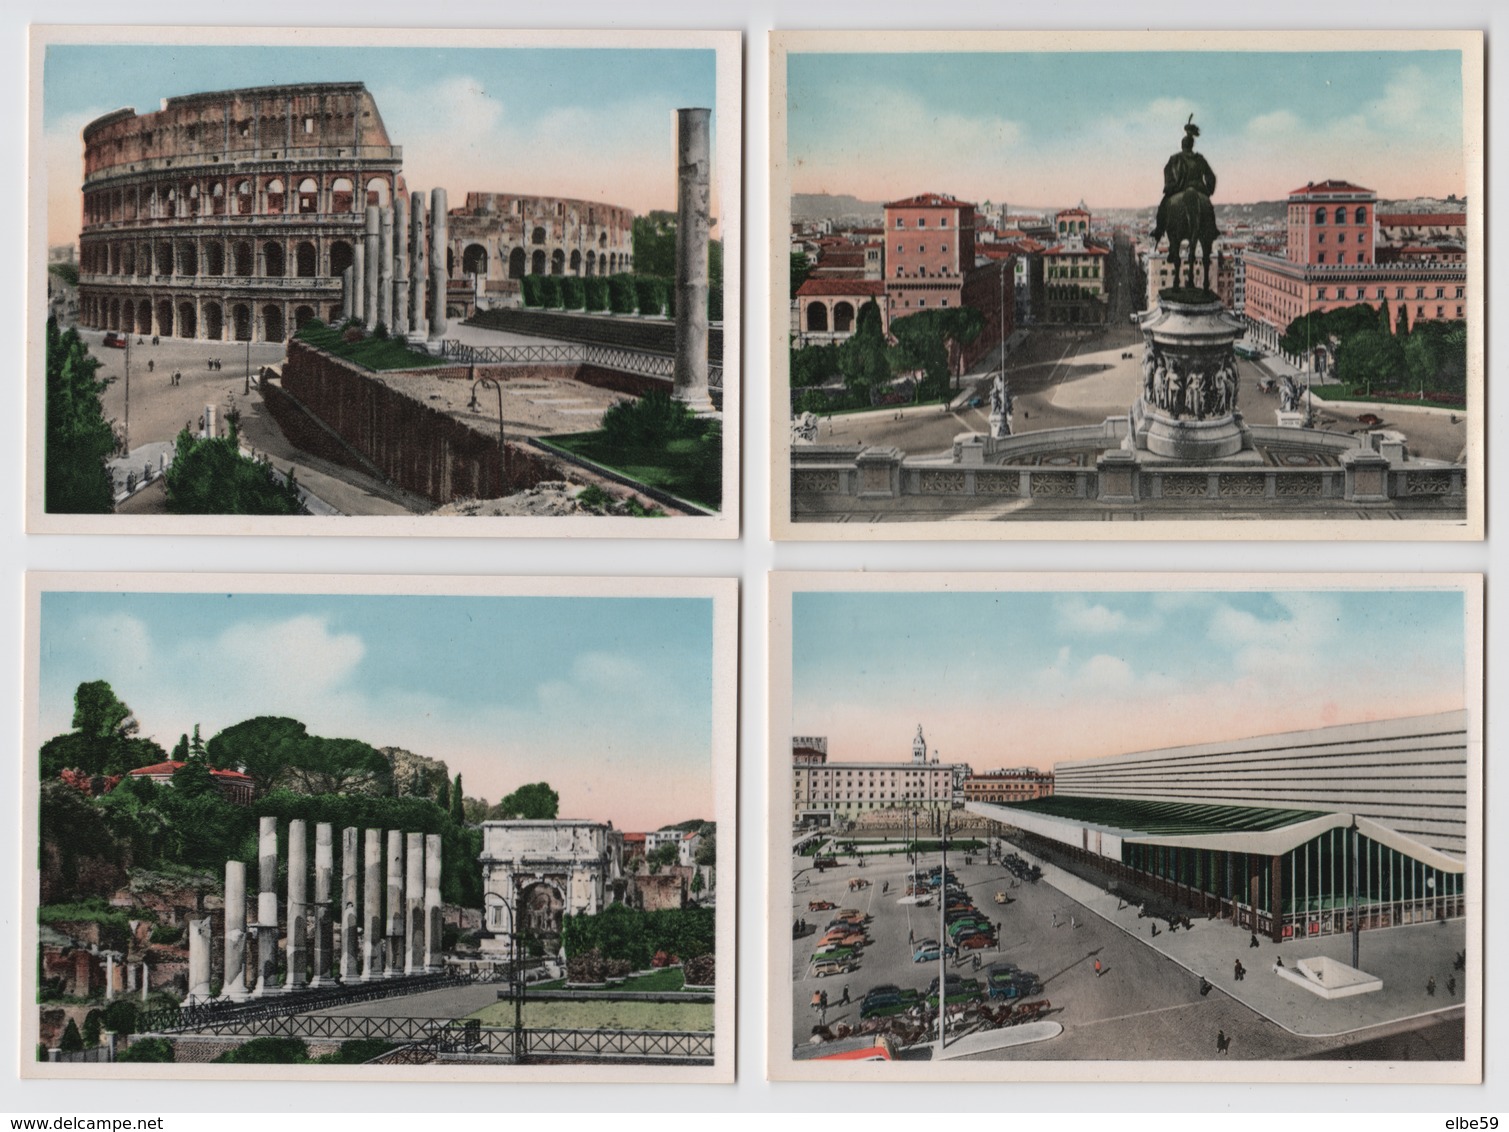 Roma (RM - Lazio) 20 foto 10,5x7,5 (ne restano 15), parte IIa in una taschina di cartone